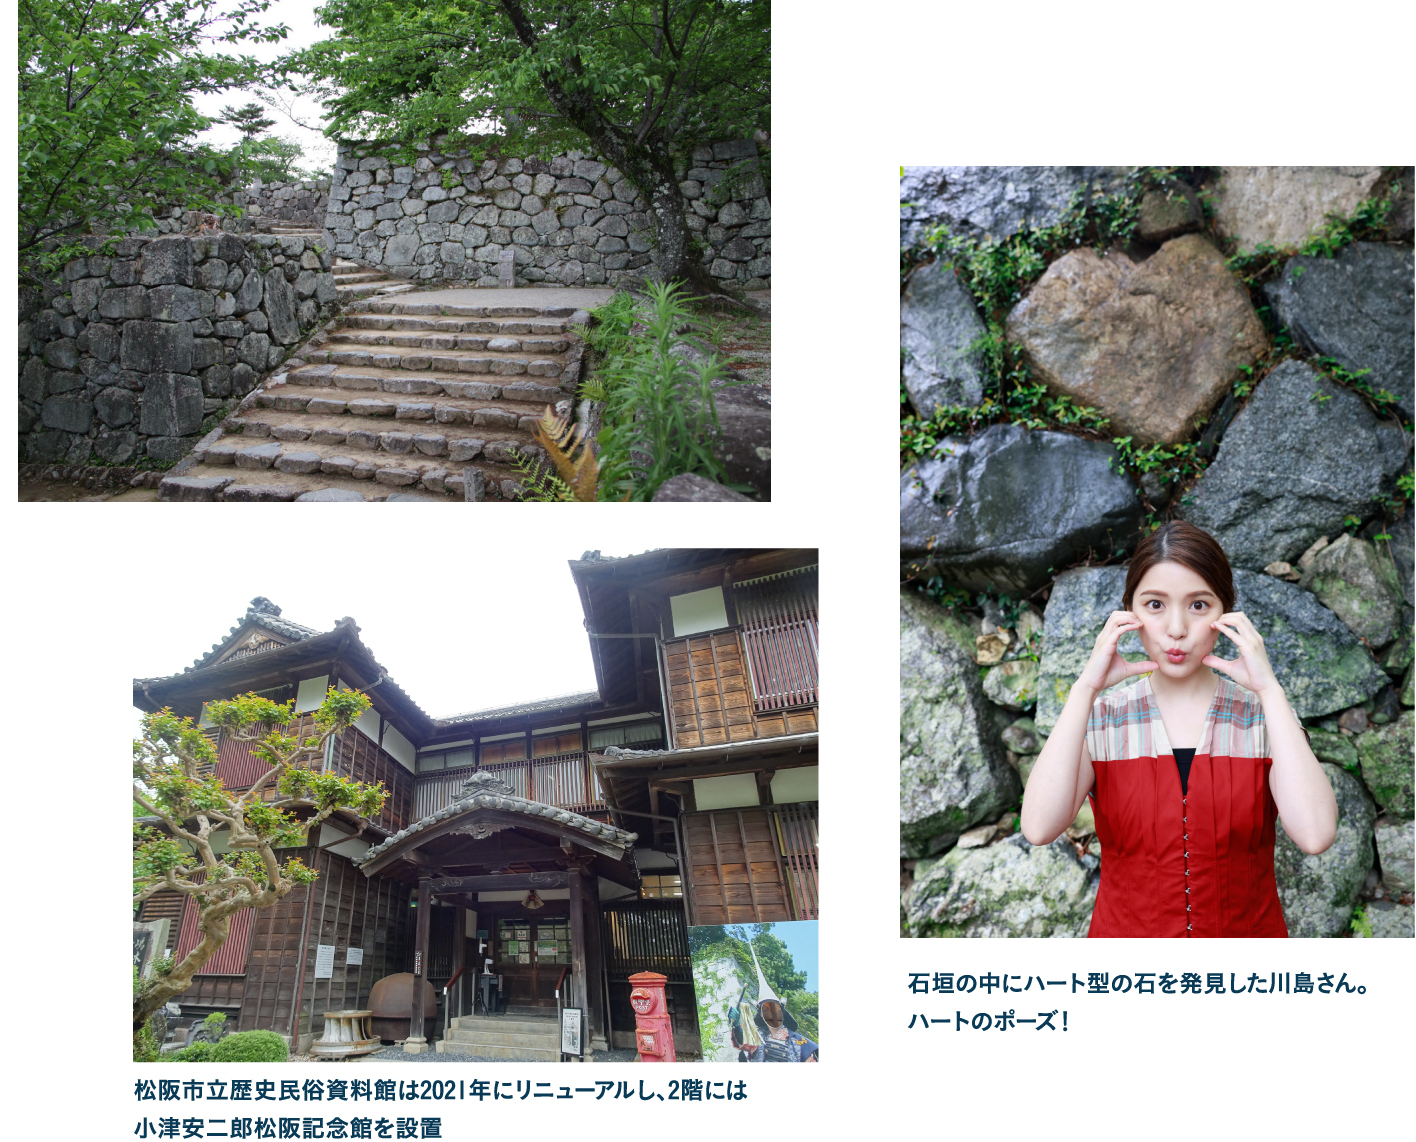 まずは松阪市のシンボル、松坂城跡へ 松阪市立歴史民俗資料館（2階：小津安二郎松阪記念館）も見学